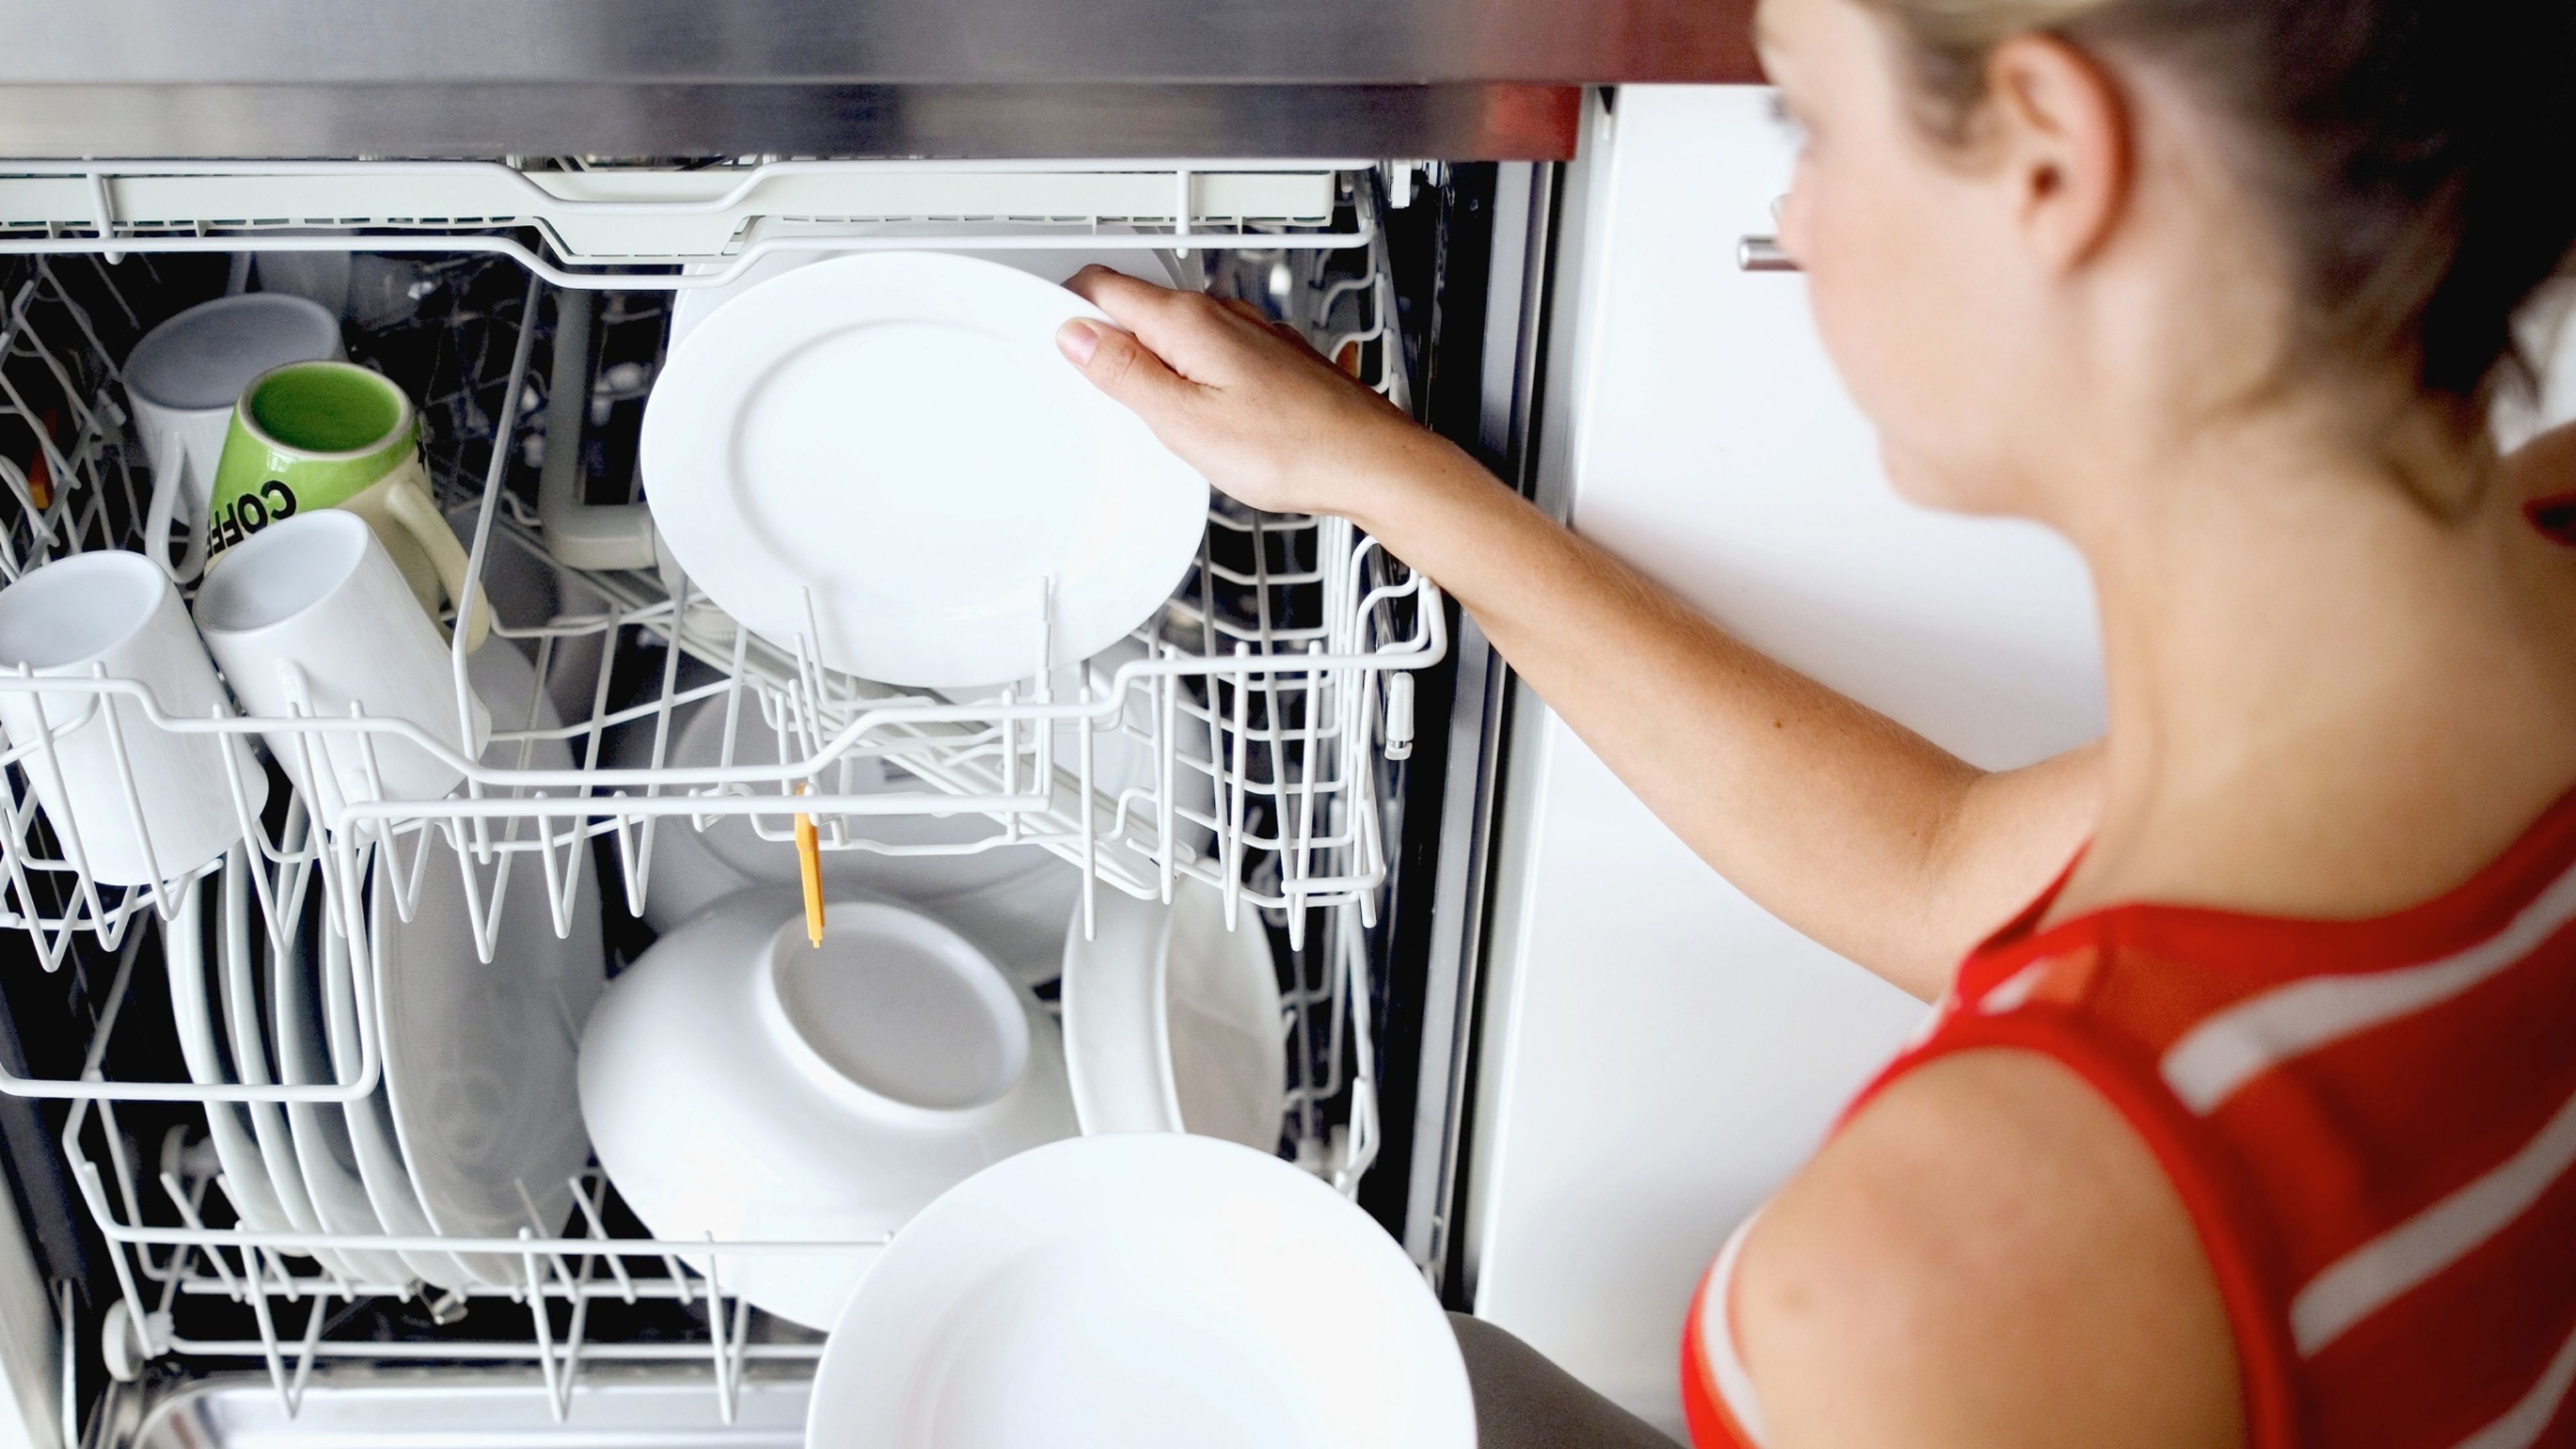 Посудомойка плохо отмывает. Для посудомоечных машин. Посуда в посудомойке. Мытье в посудомоечной машине. Грязная посуда в посудомоечной машине.